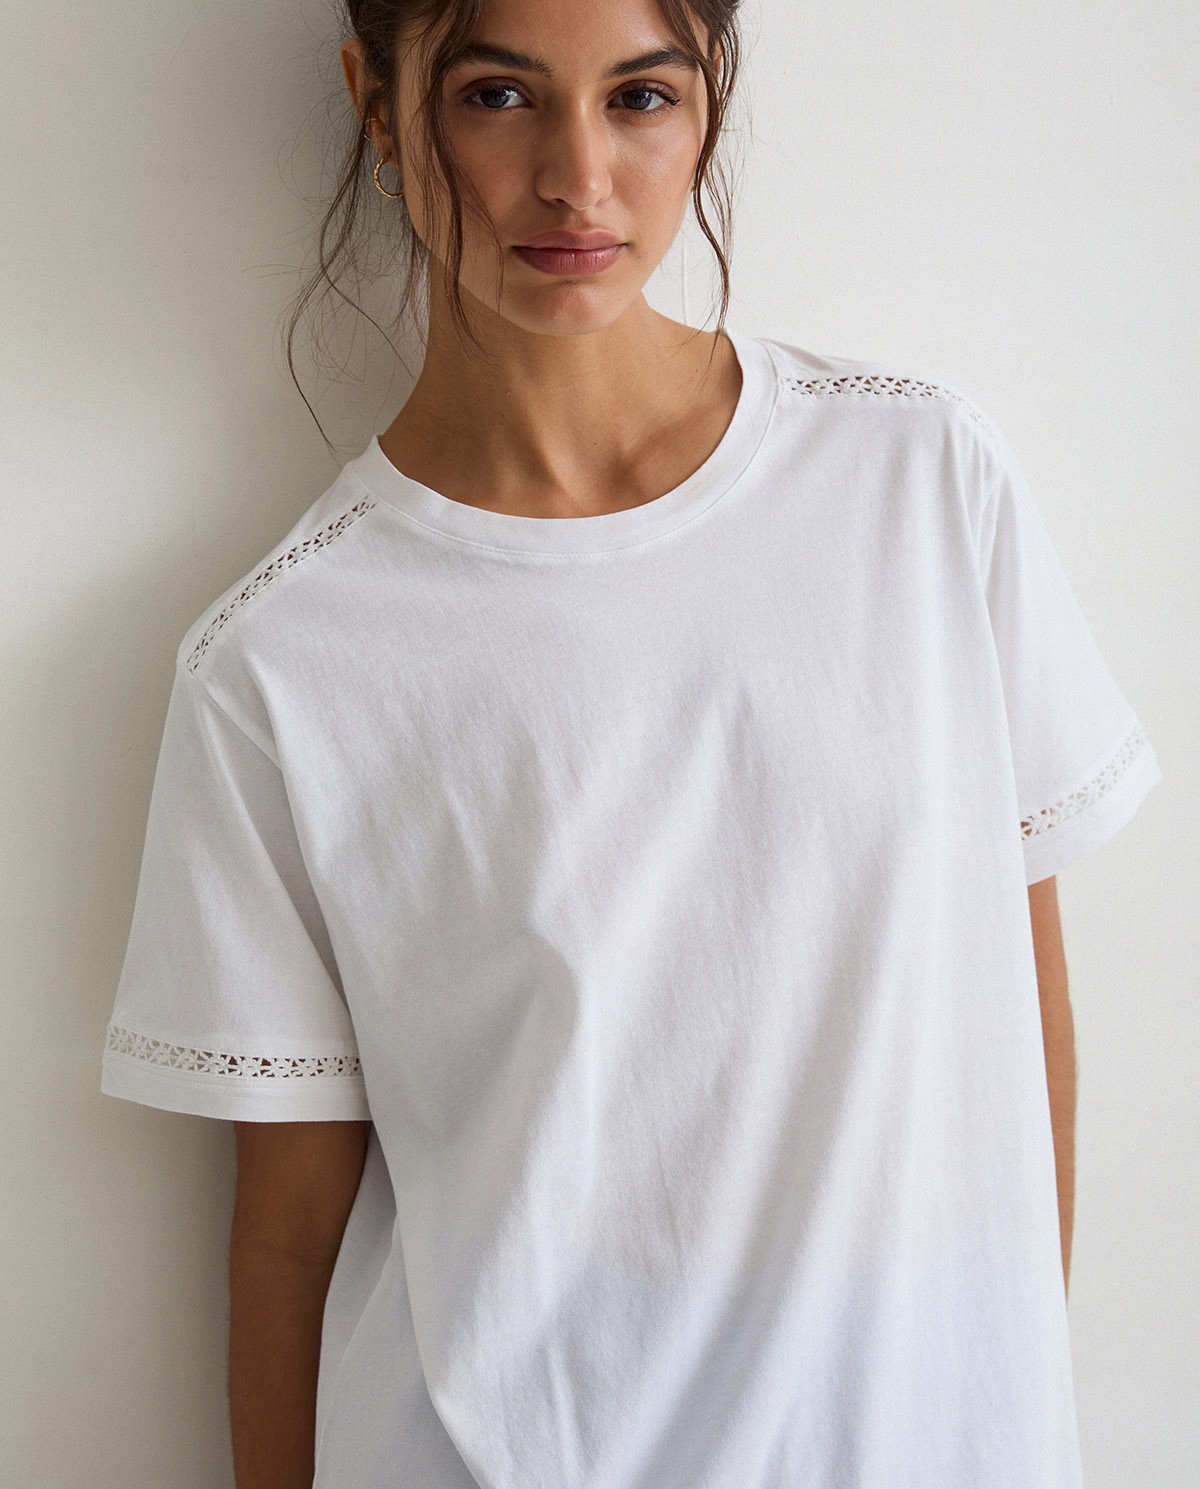 Cotton t-shirt decorative stitching White 2